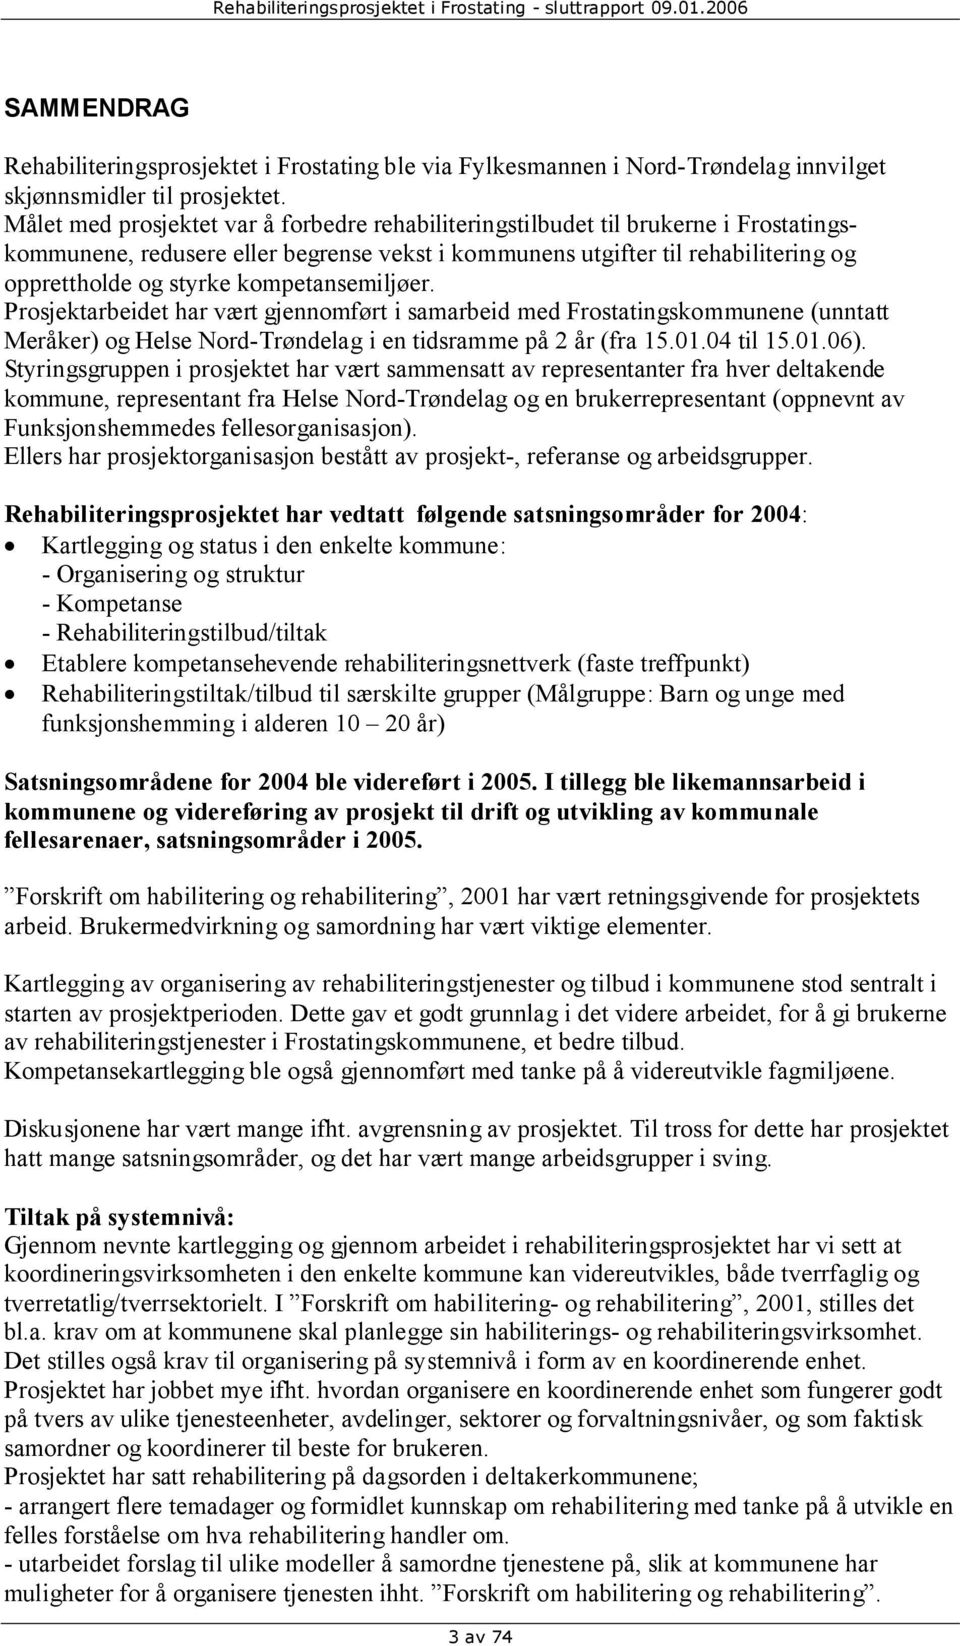 kompetansemiljøer. Prosjektarbeidet har vært gjennomført i samarbeid med Frostatingskommunene (unntatt Meråker) og Helse Nord-Trøndelag i en tidsramme på 2 år (fra 15.01.04 til 15.01.06).